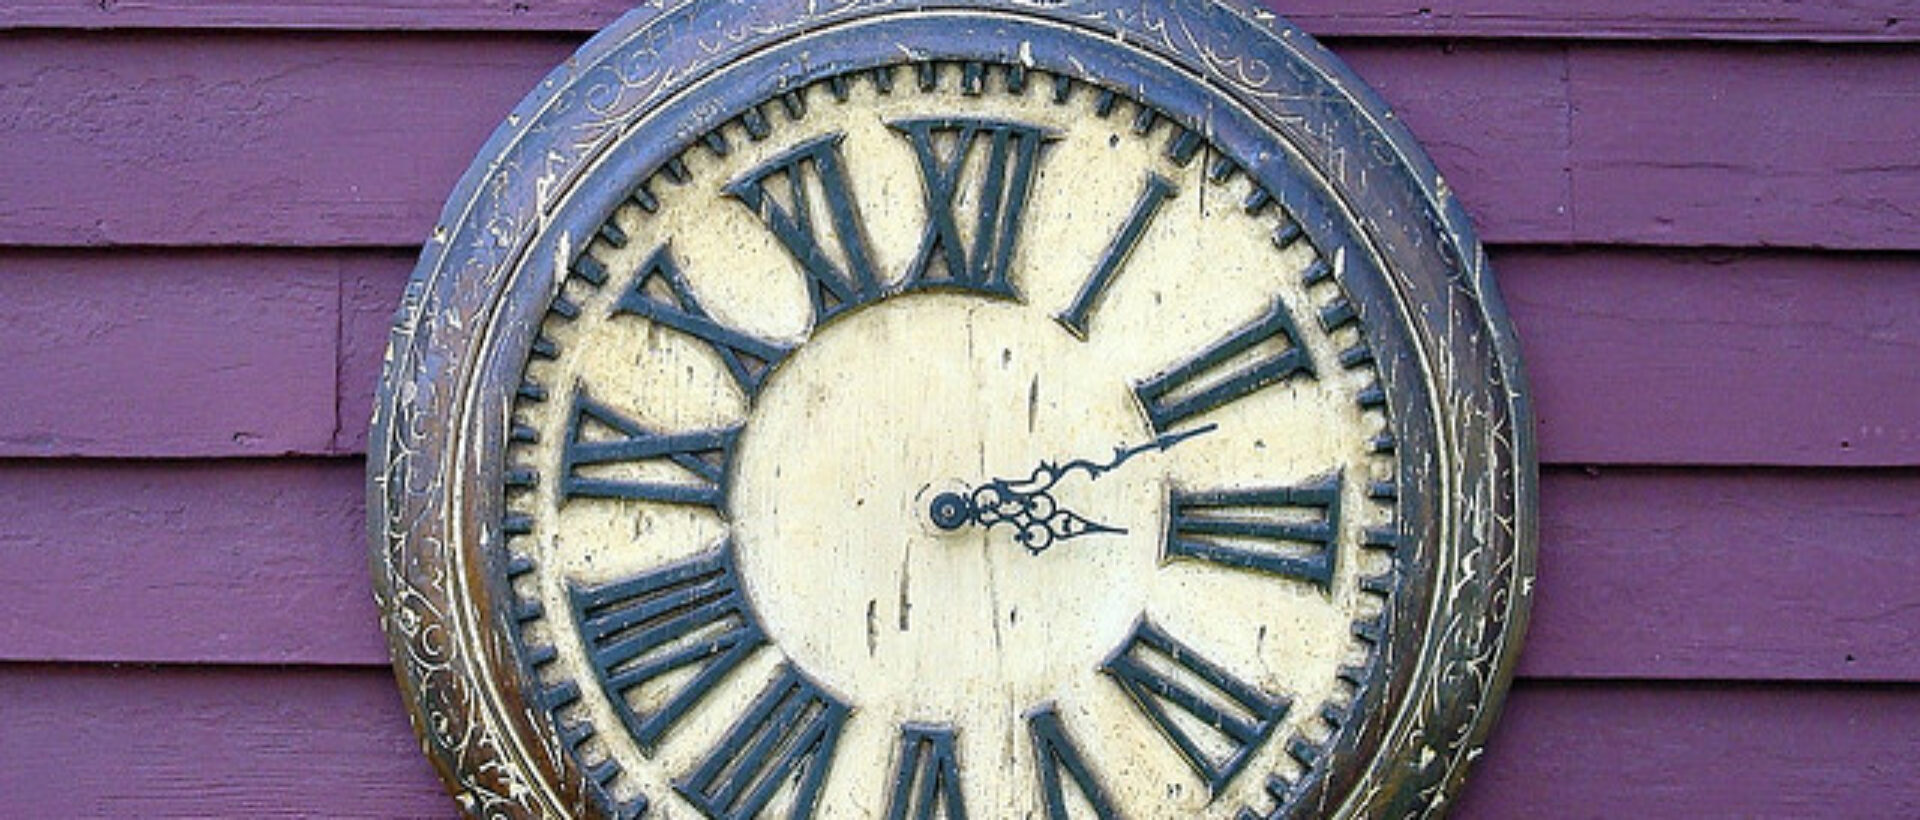 Uhr, welche die kurze Lebensdauer von Facebook-Posts symbolisiert